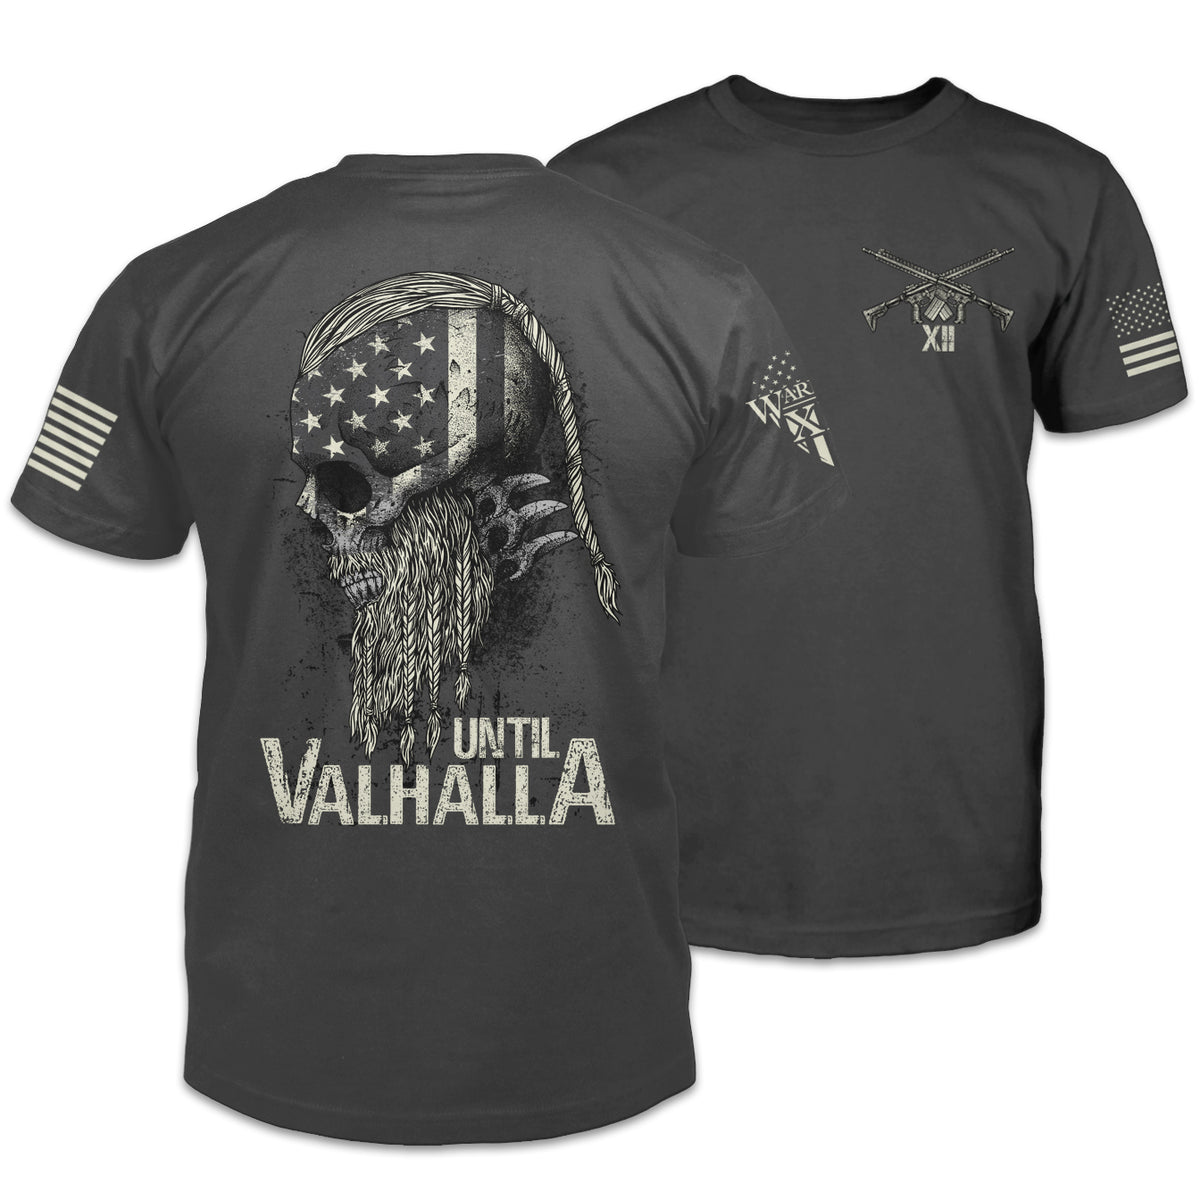 Until Valhalla - Warrior 12 - A Patriotic Apparel Company